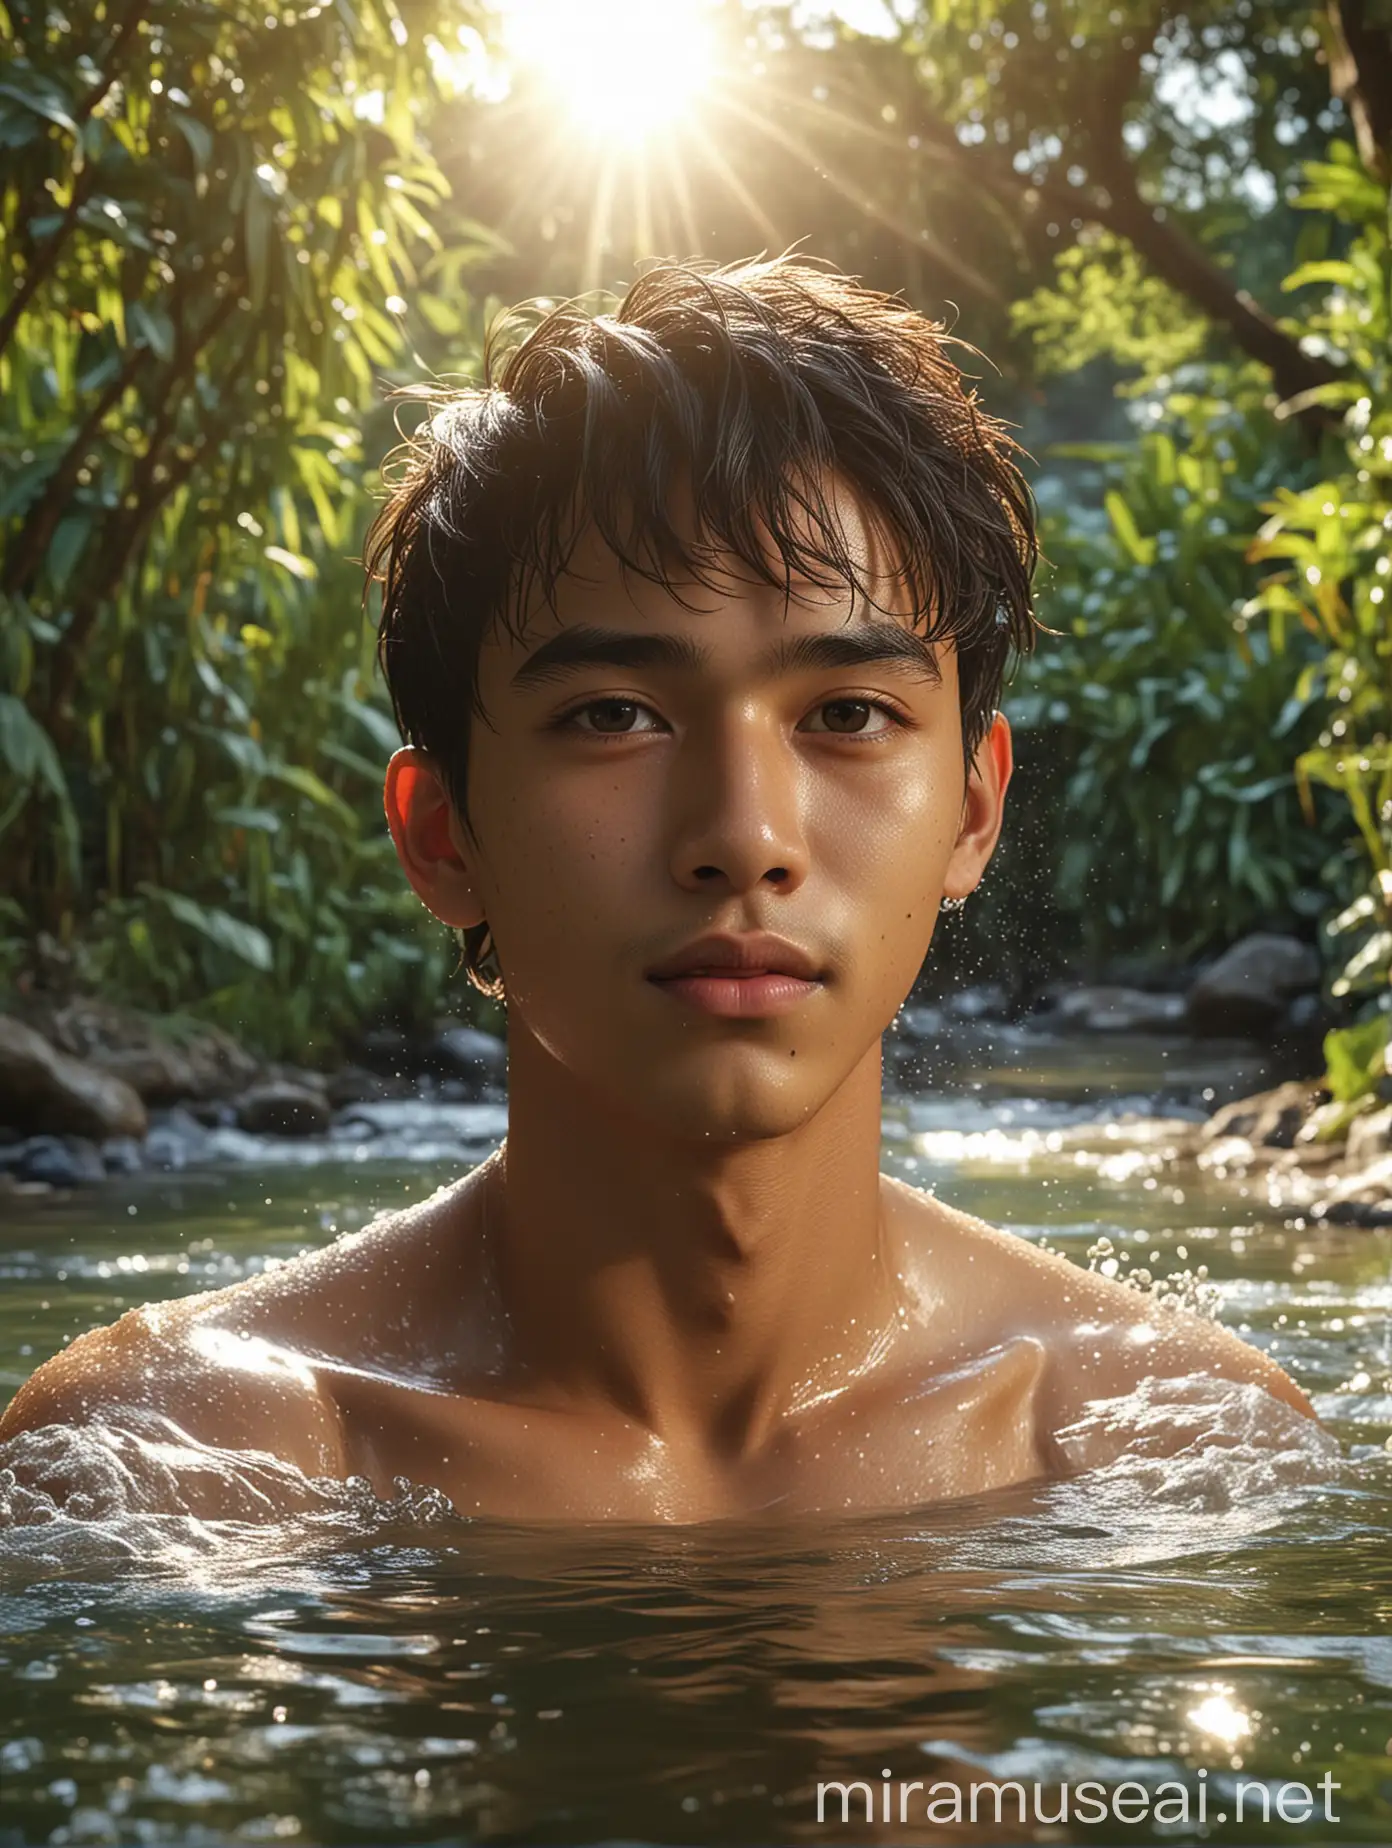 seorang pria tampan usia 18 tahun, wajah Indonesia, gaya rambut under cut, sedang mandi di sungai yang airnya mengalir jernih, latar belakang sungai dan kebun saat sore hari (terlihat matahari terbenam), hyperrealistis. UHD, gambar sangatlah nyata sekali, 360 PX